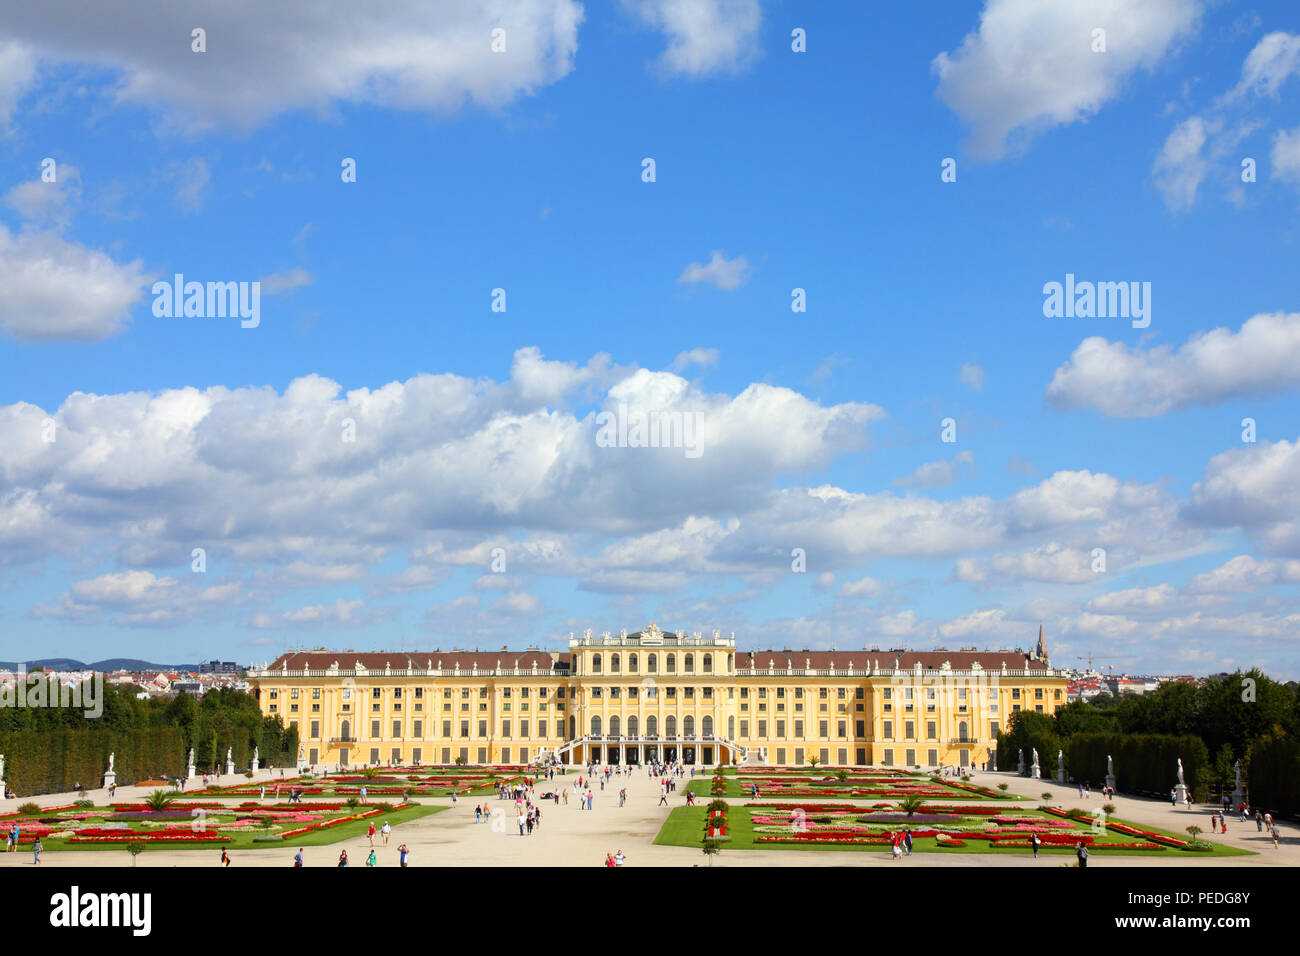 Viena, Austria - El Palacio de Schönbrunn, Sitio del Patrimonio Mundial de la UNESCO. Foto de stock